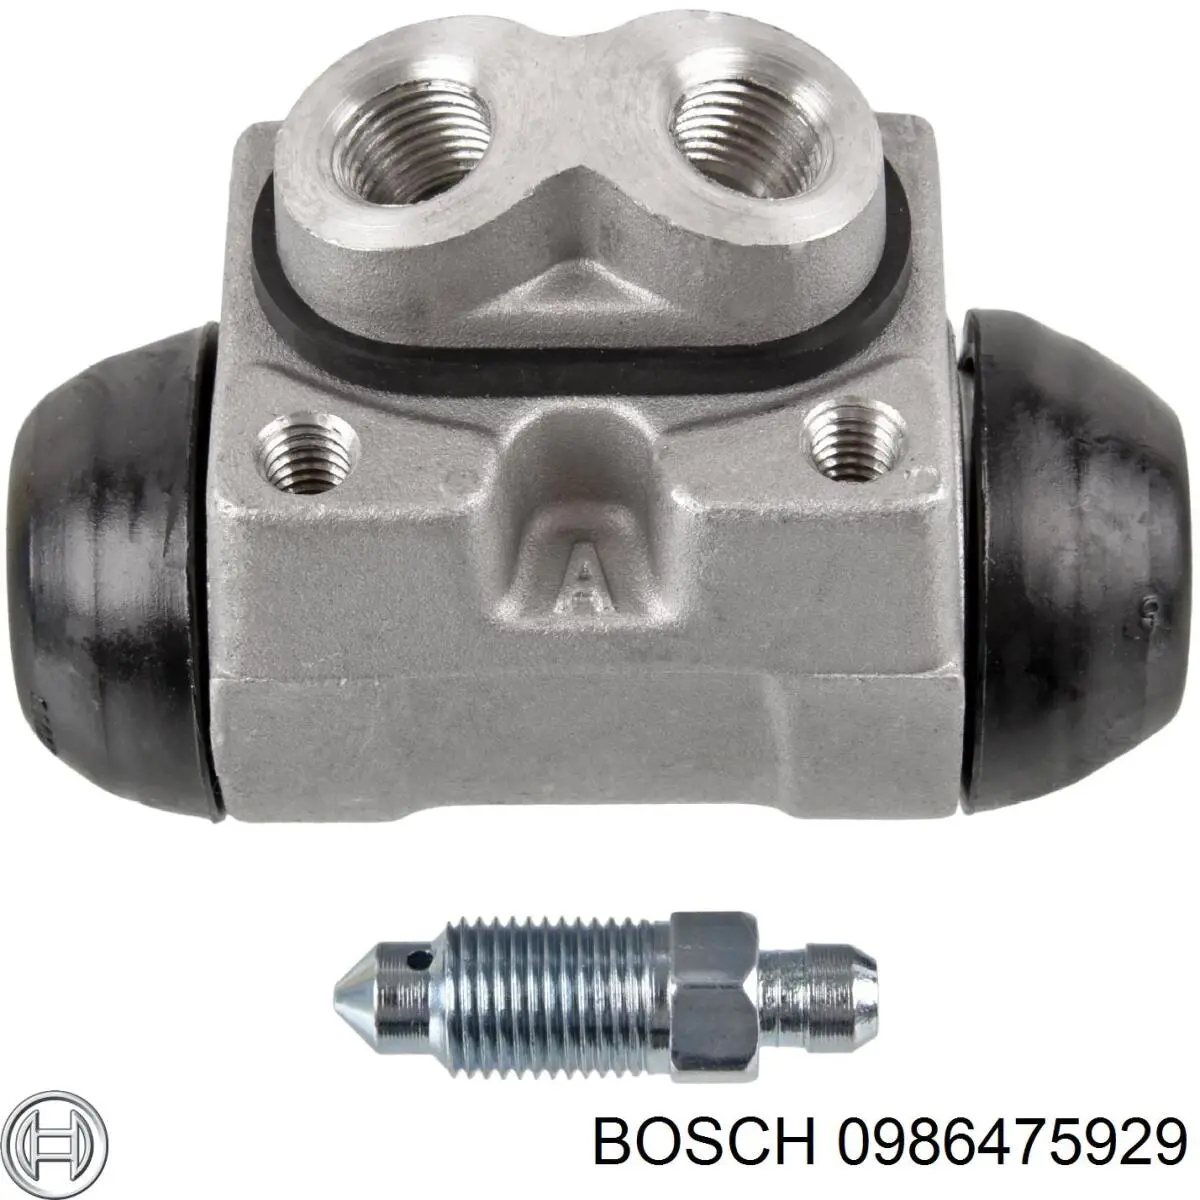 0986475929 Bosch cilindro de freno de rueda trasero